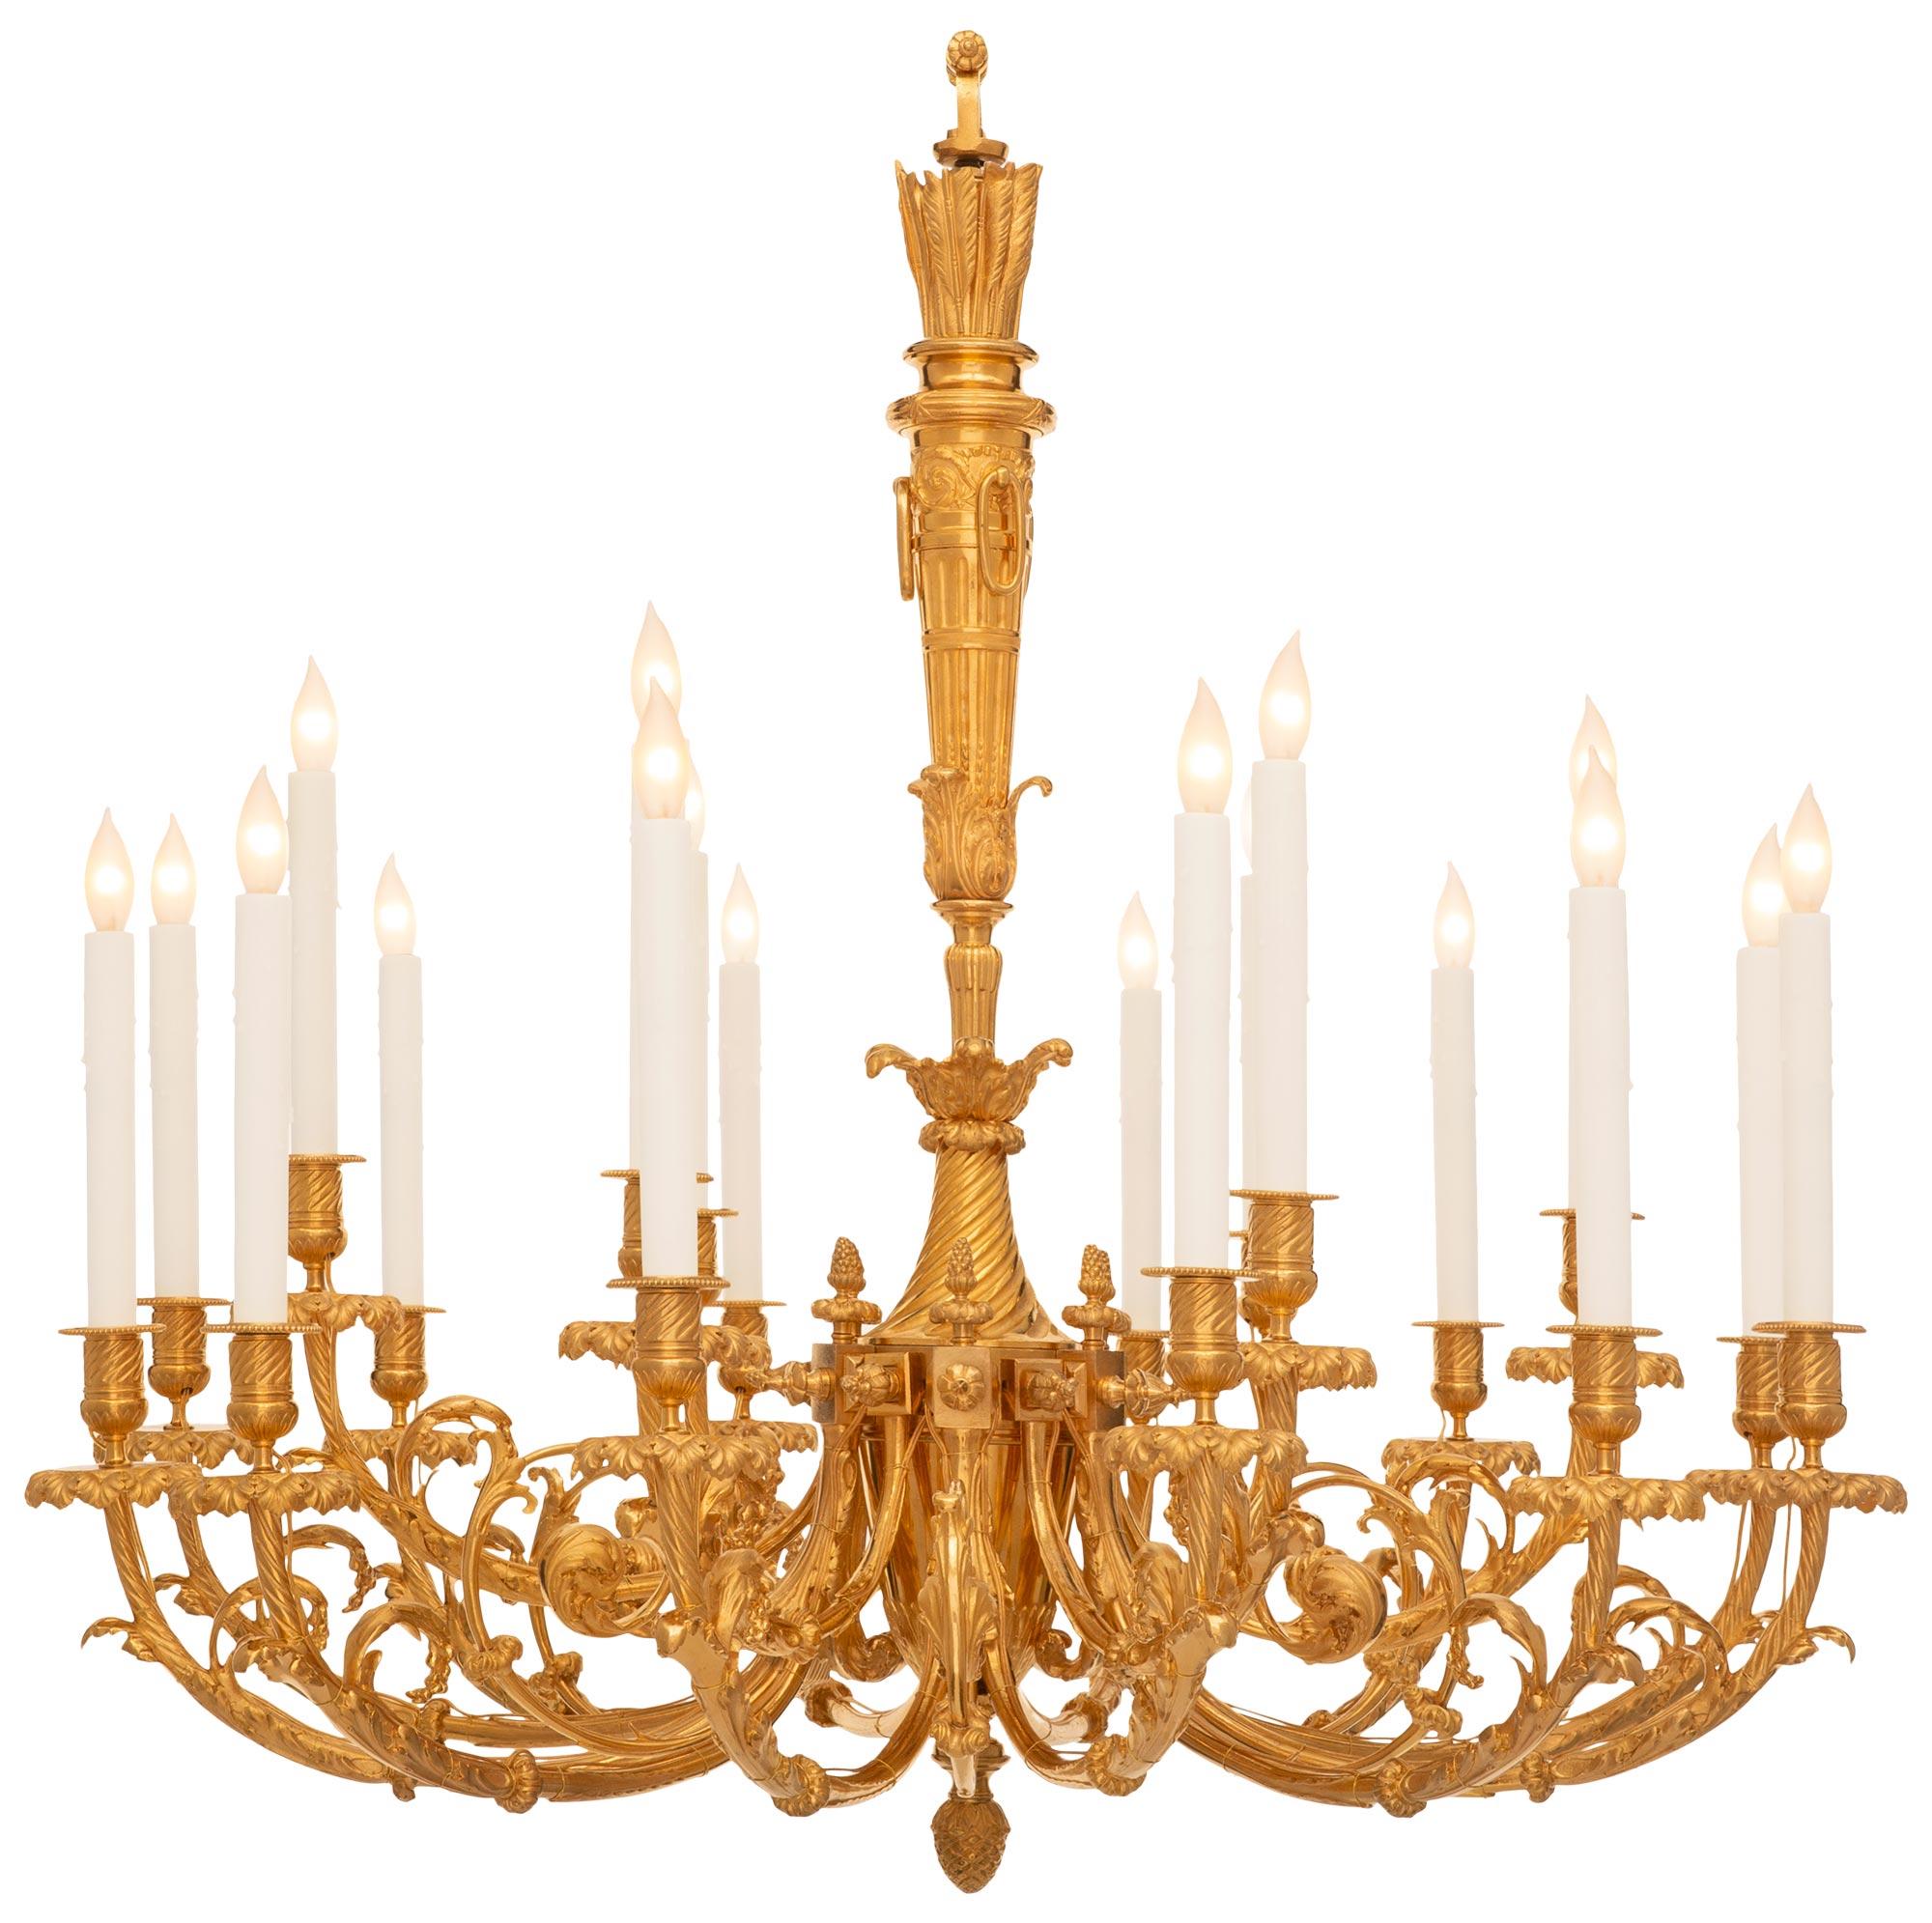 Lustre élégant et de grande taille en bronze doré de style Louis XVI du XIXe siècle. Le lustre à dix-huit lumières est centré par un fleuron en forme de gland richement ciselé qui mène aux bras électrifiés divisés en deux bras flanqués de volutes en